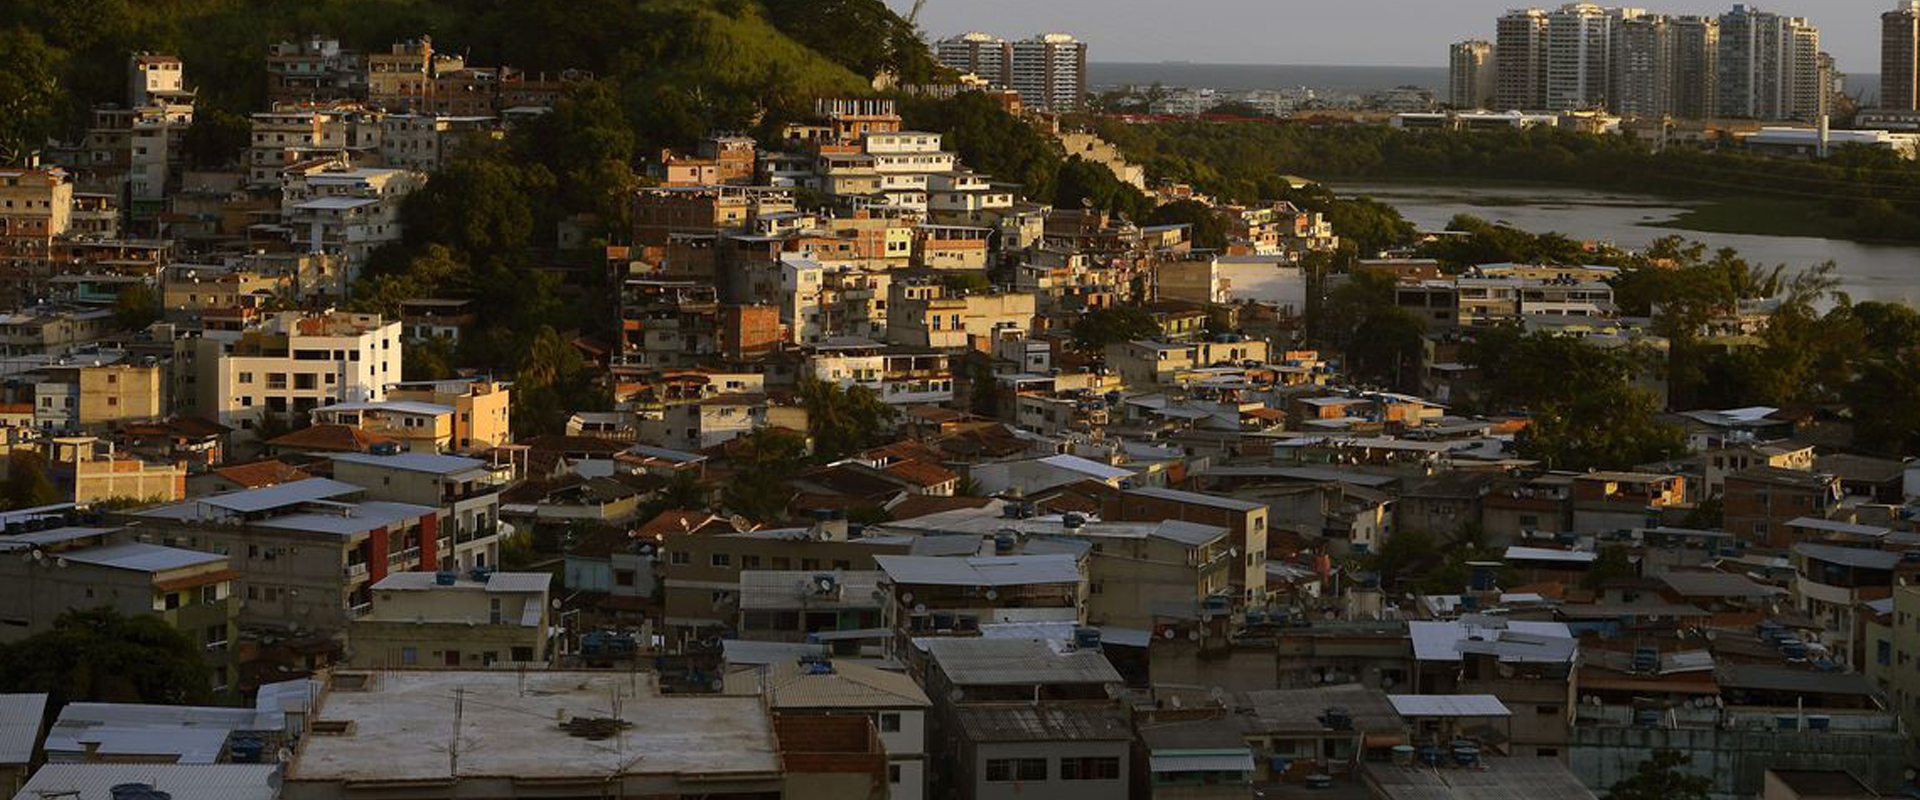 Rede BR Cidades divulga agenda coletiva com propostas para as cidades do Brasil